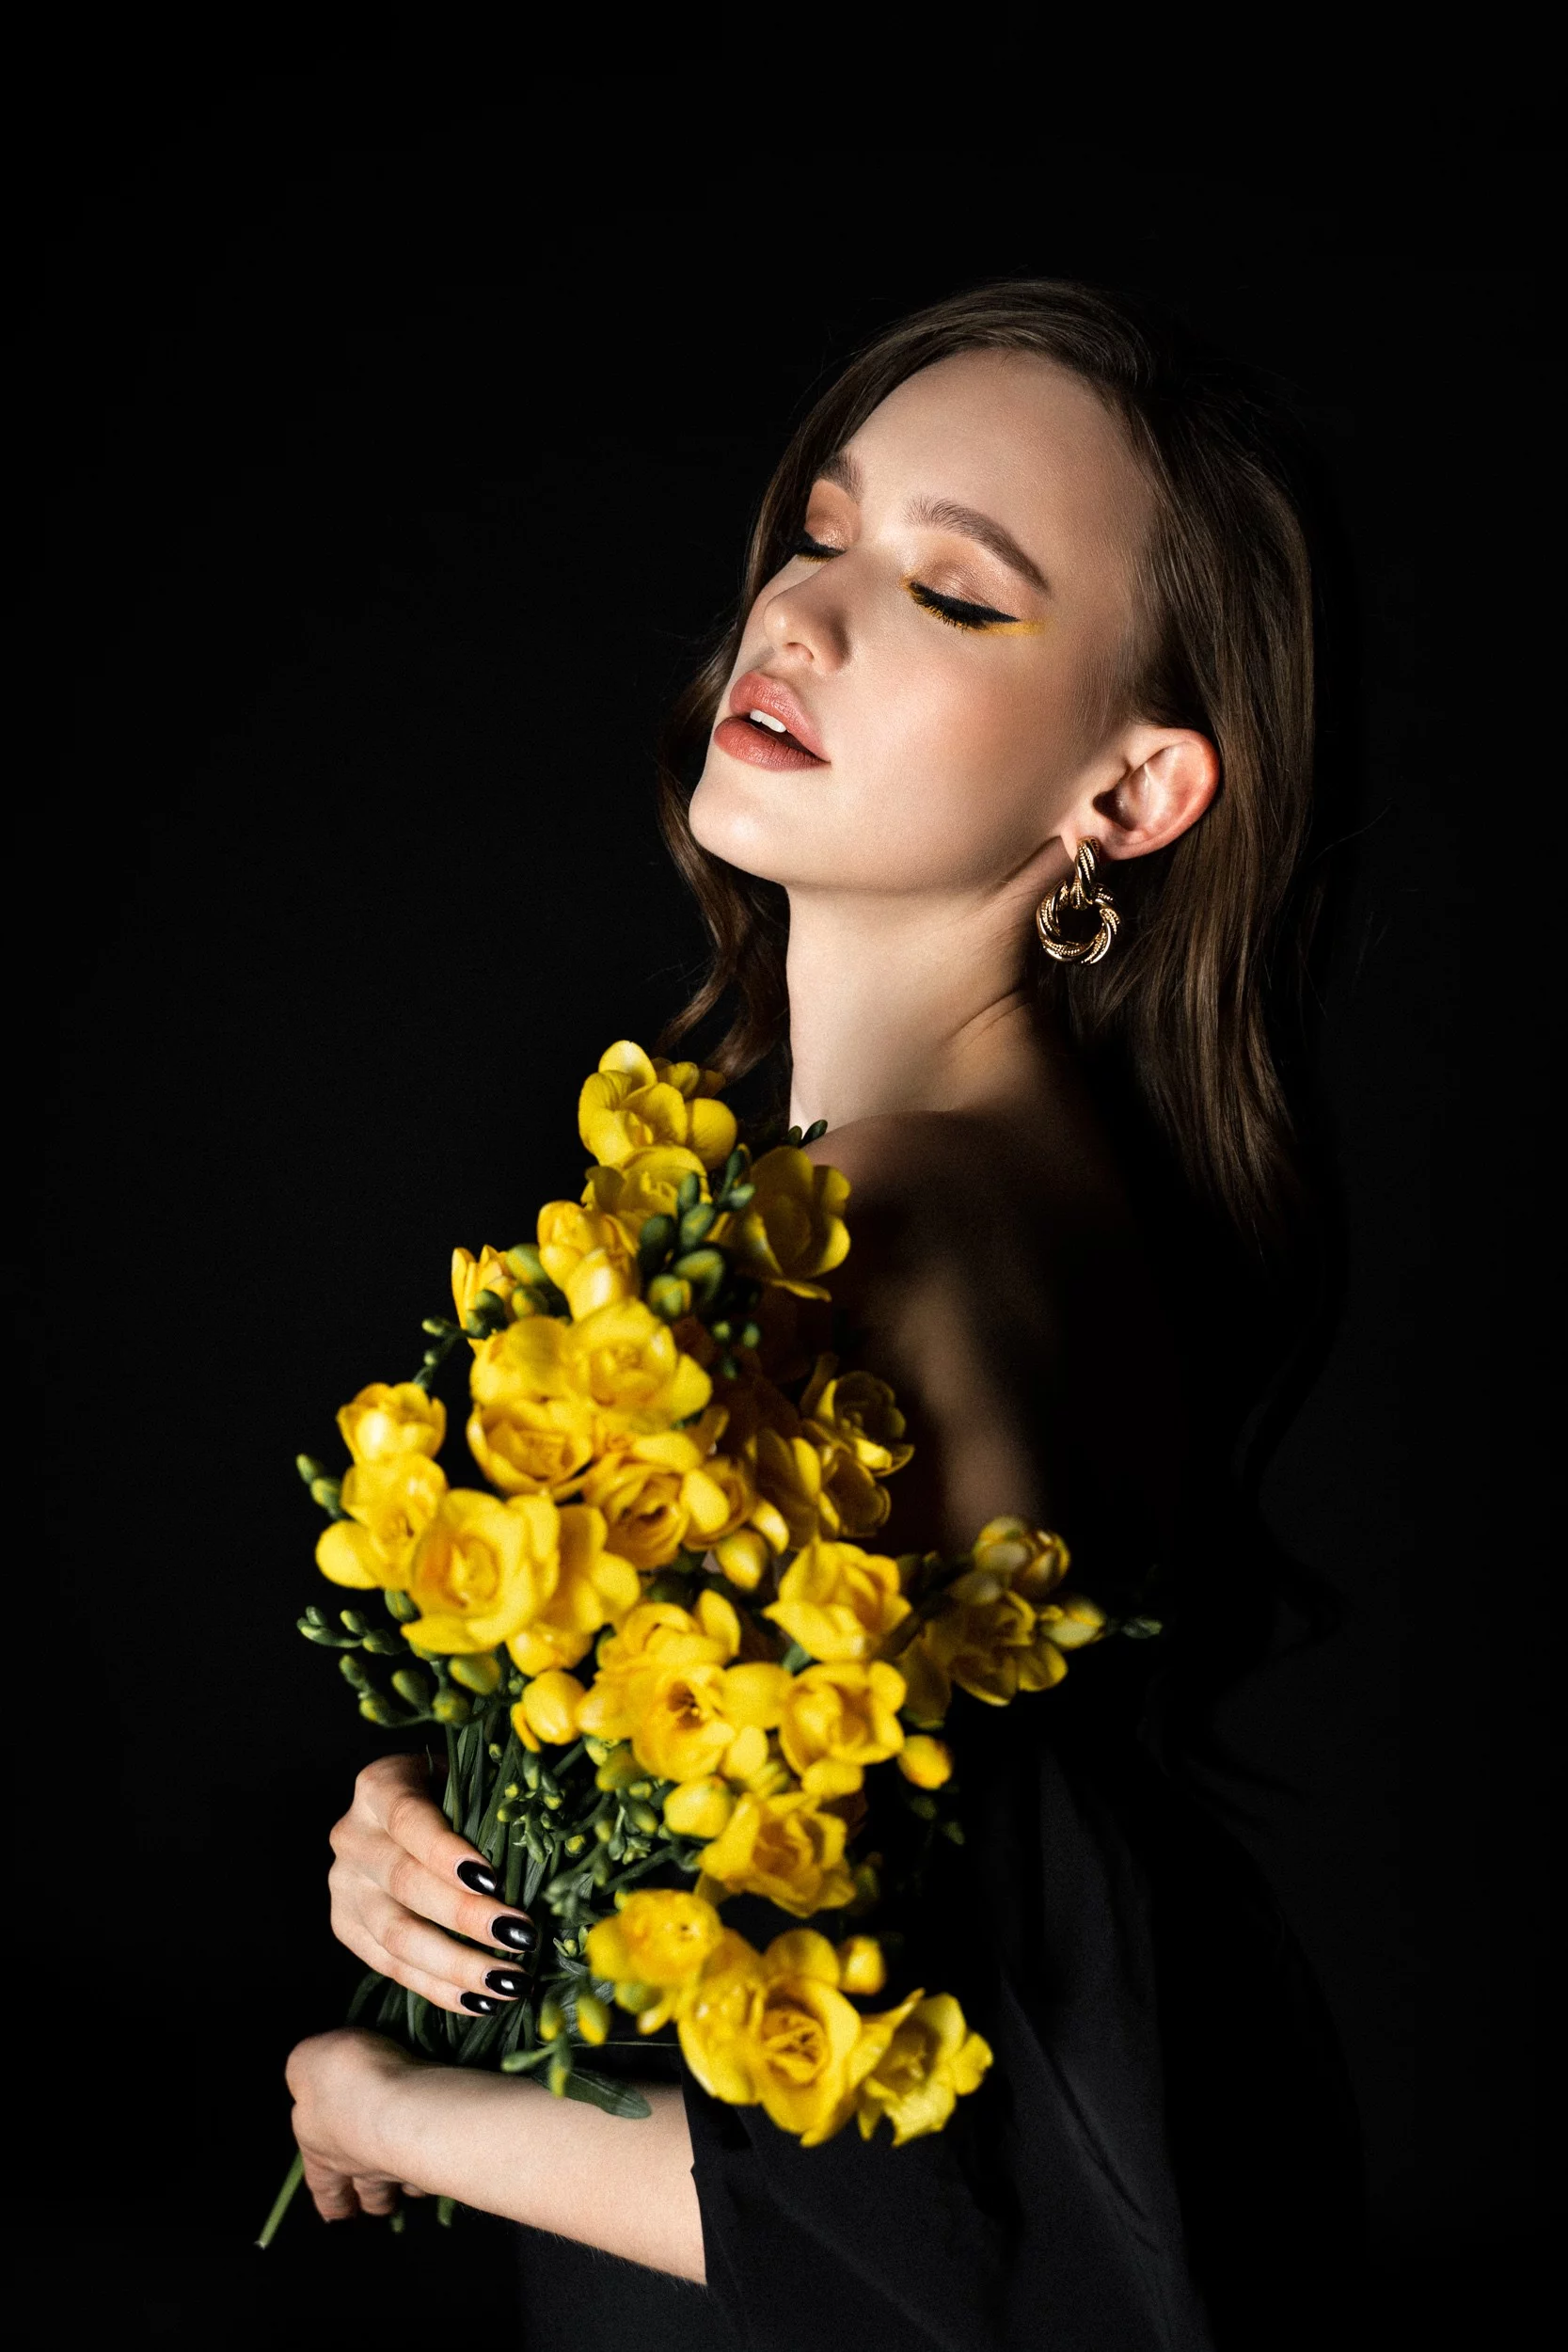 Profesionalno portretno fotografiranje v studiu s rožami